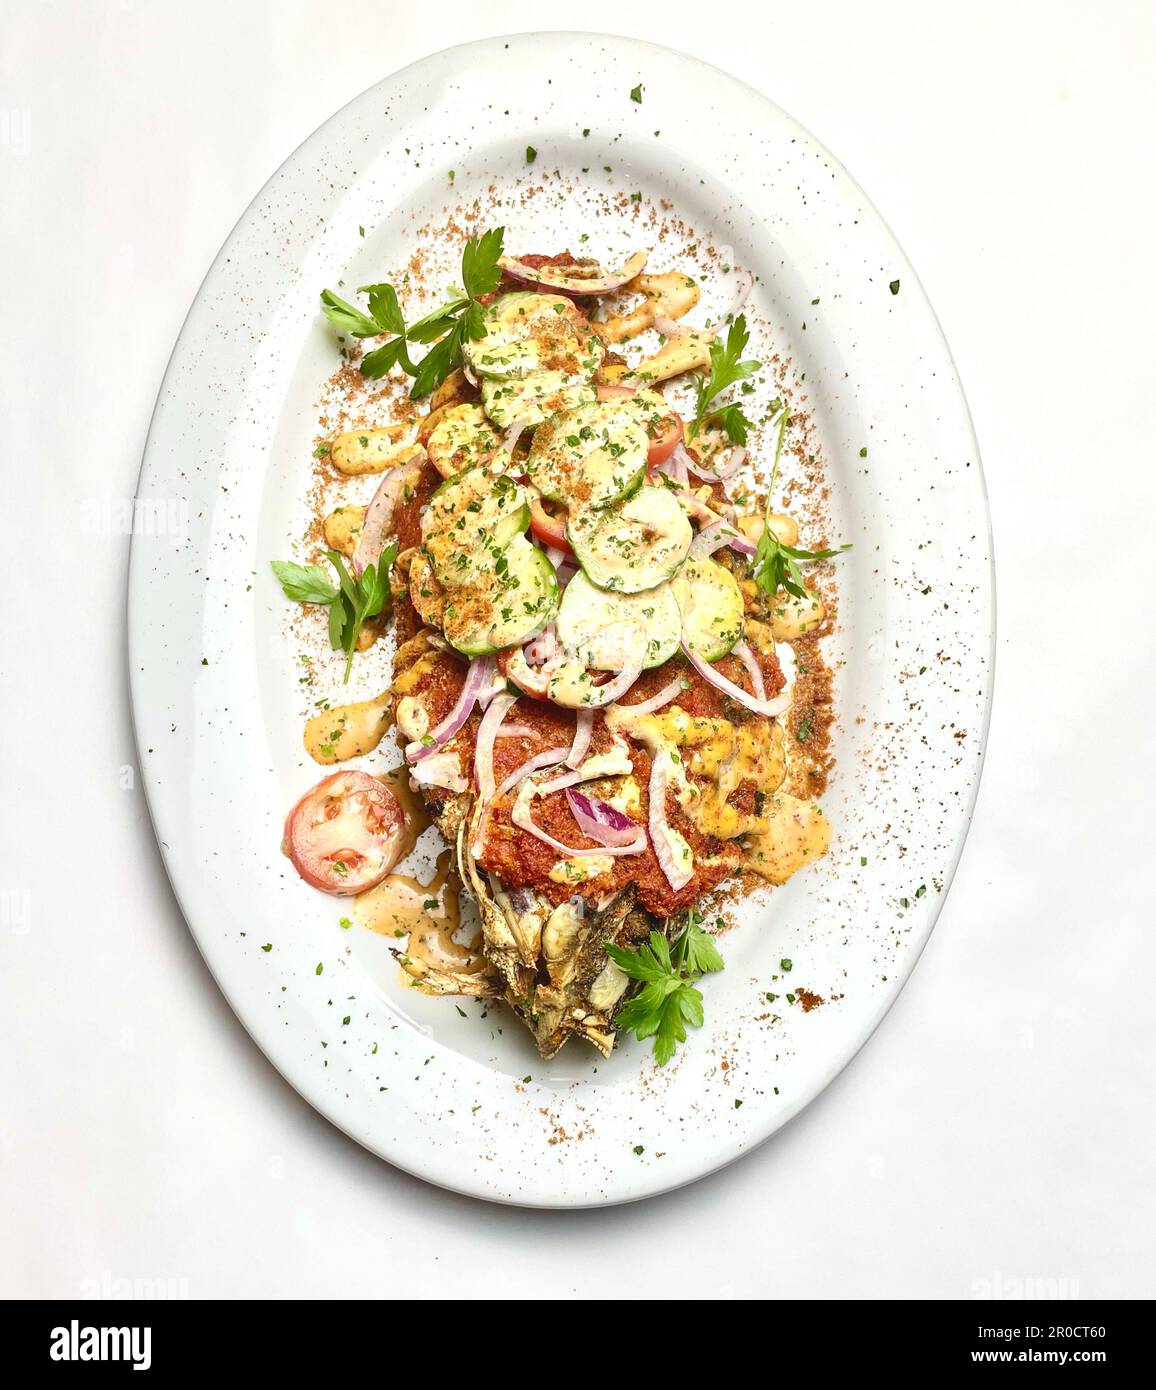 Un plat fraîchement cuit avec du poisson blanc succulent et une variété de légumes colorés, présenté sur une assiette blanche et garni d'herbes Banque D'Images